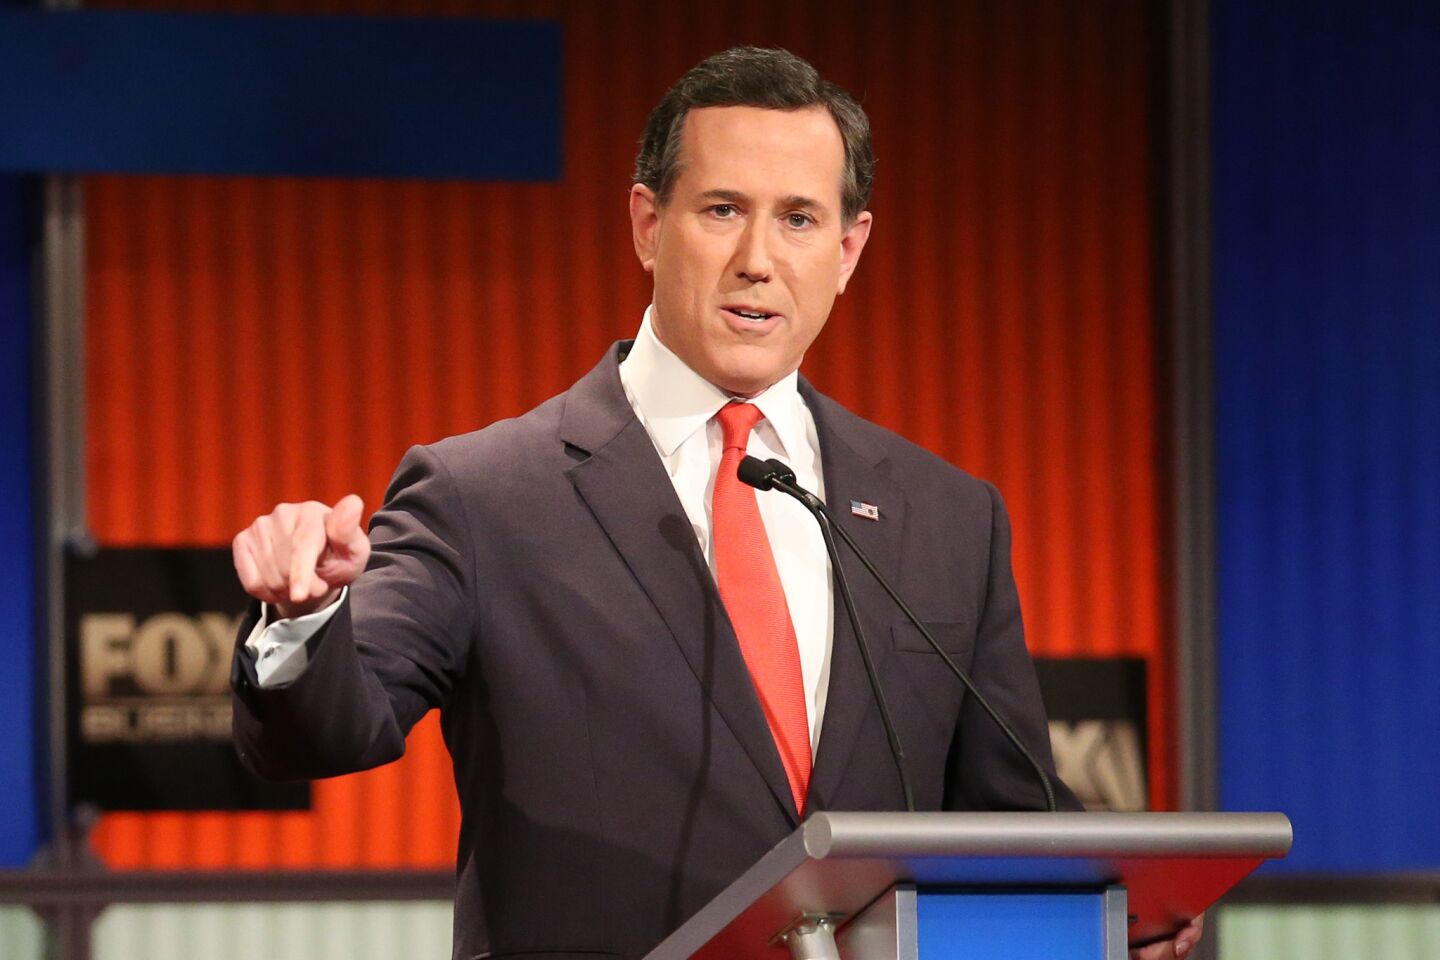 Rick Santorum makes a point in the debate.